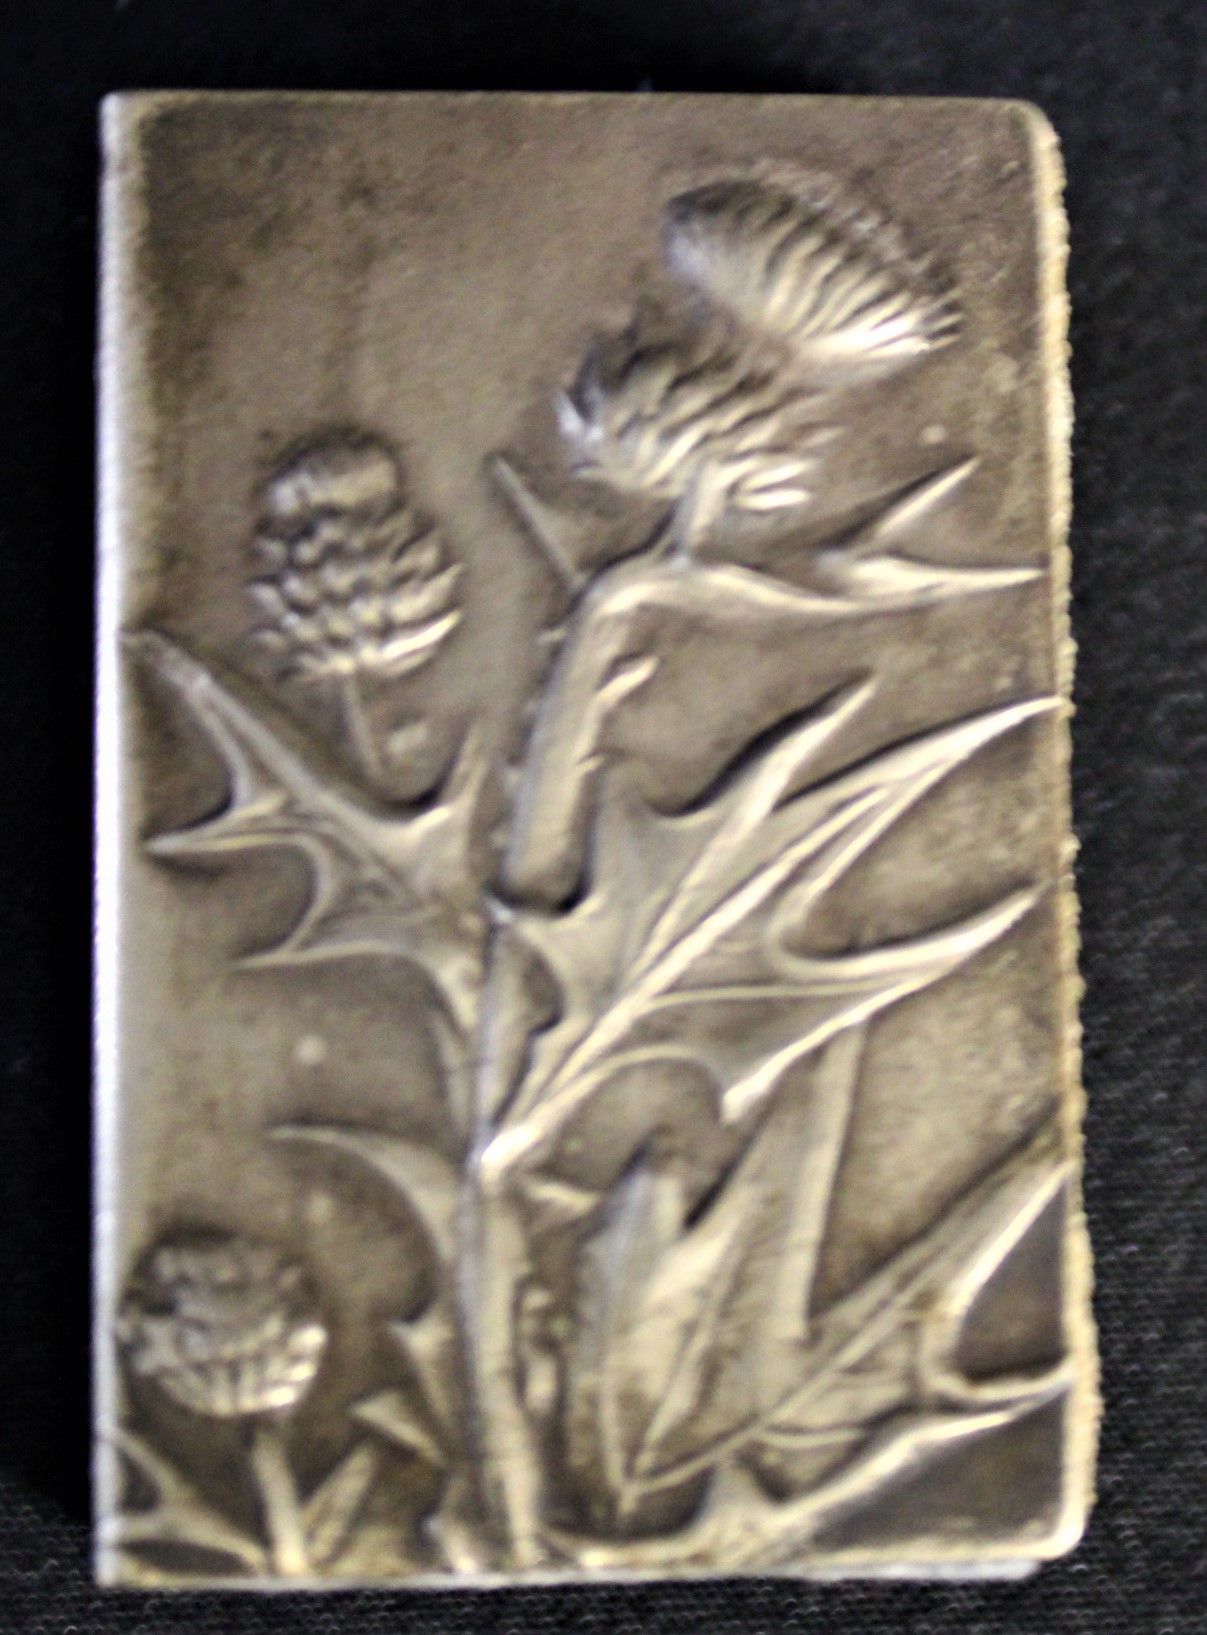 Null Matchbox "Lair d'Appenzell purgatif" silver plated, worn scraper, 4,6x1,3